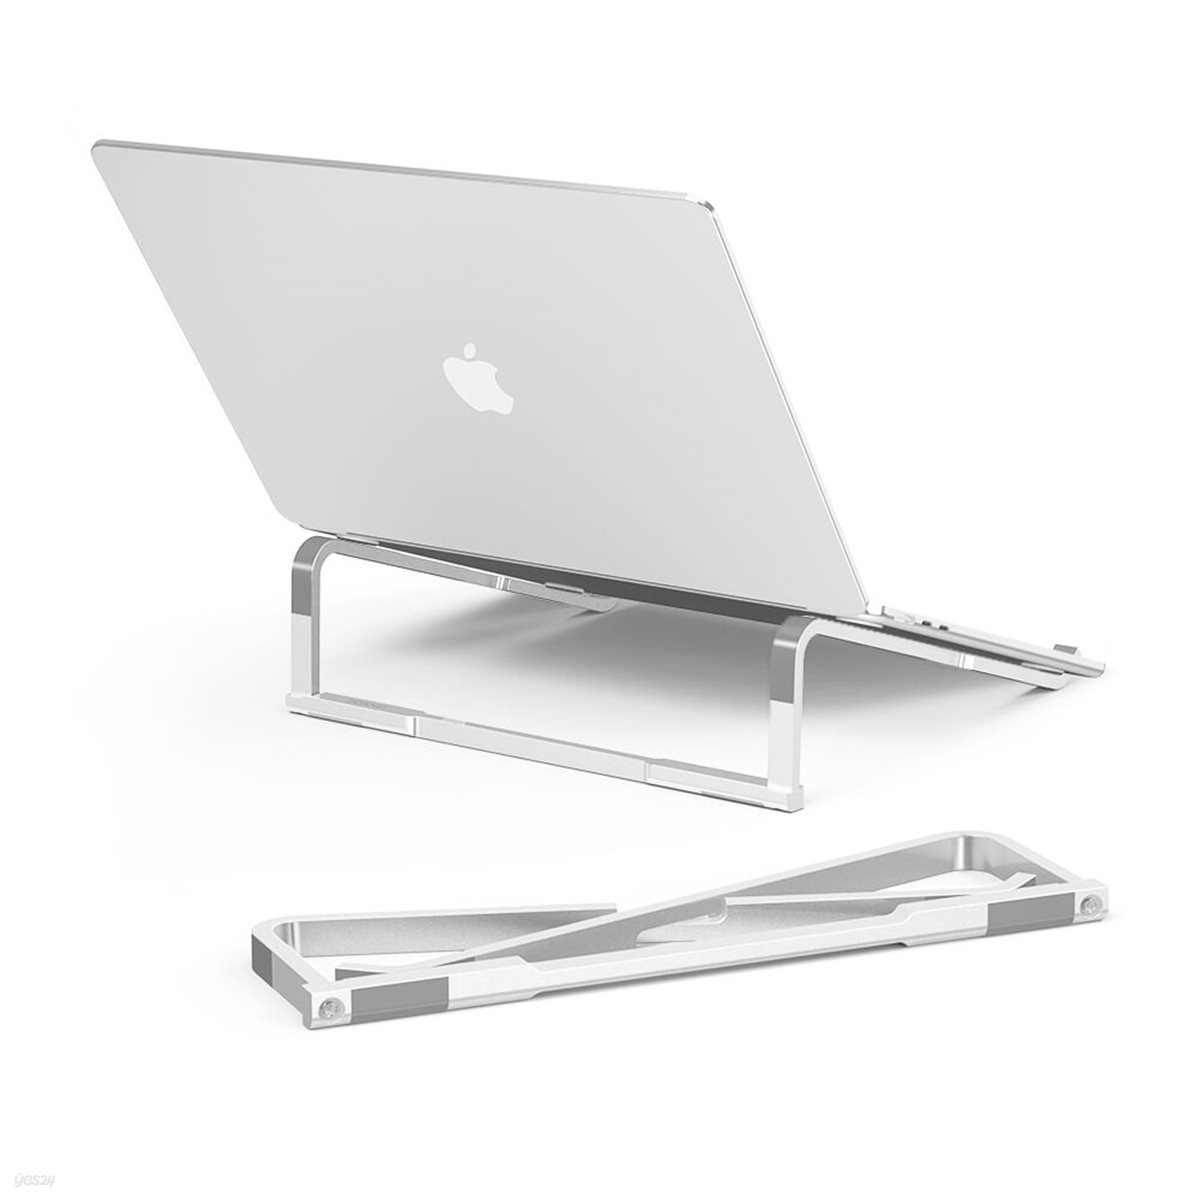 모락 수맥 알루미늄 접이식 휴대용 노트북 거치대 받침대 맥북 그램 스탠드 높이조절